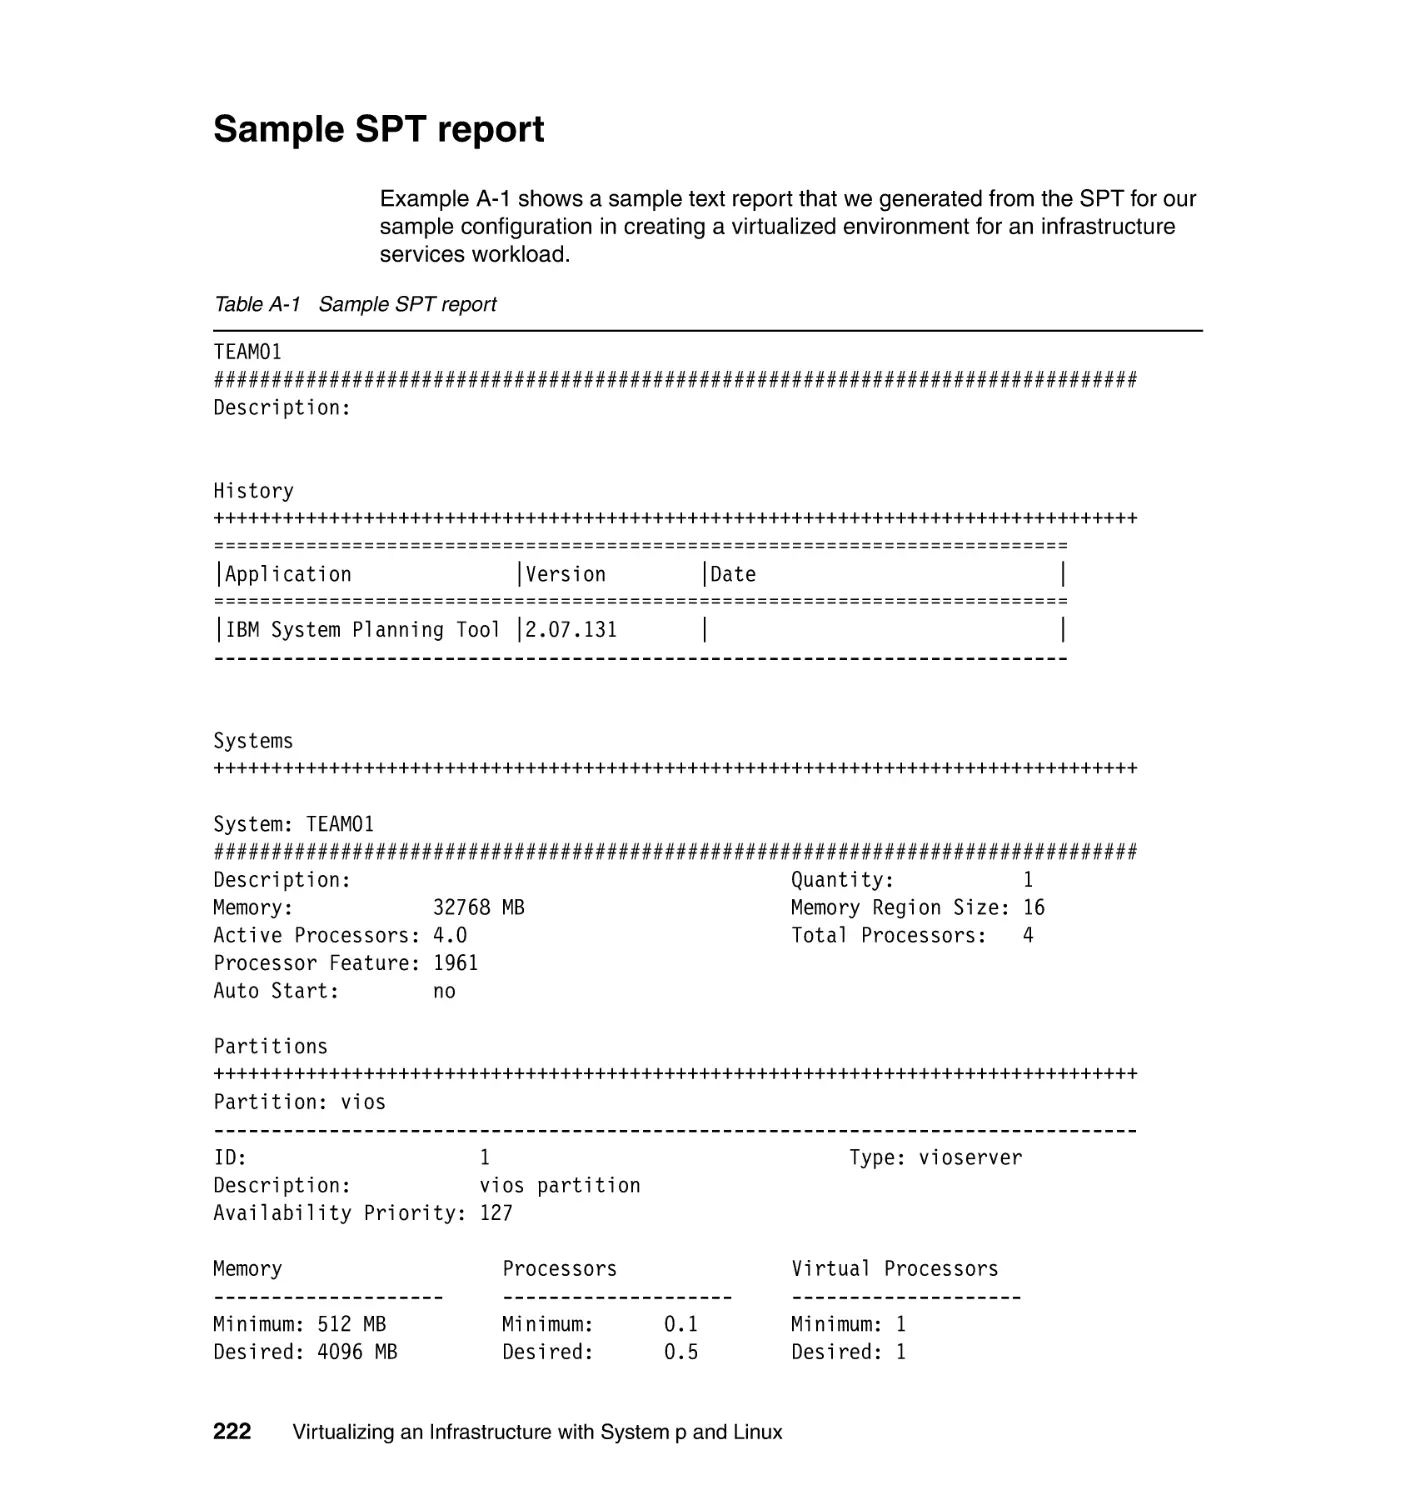 Sample SPT report